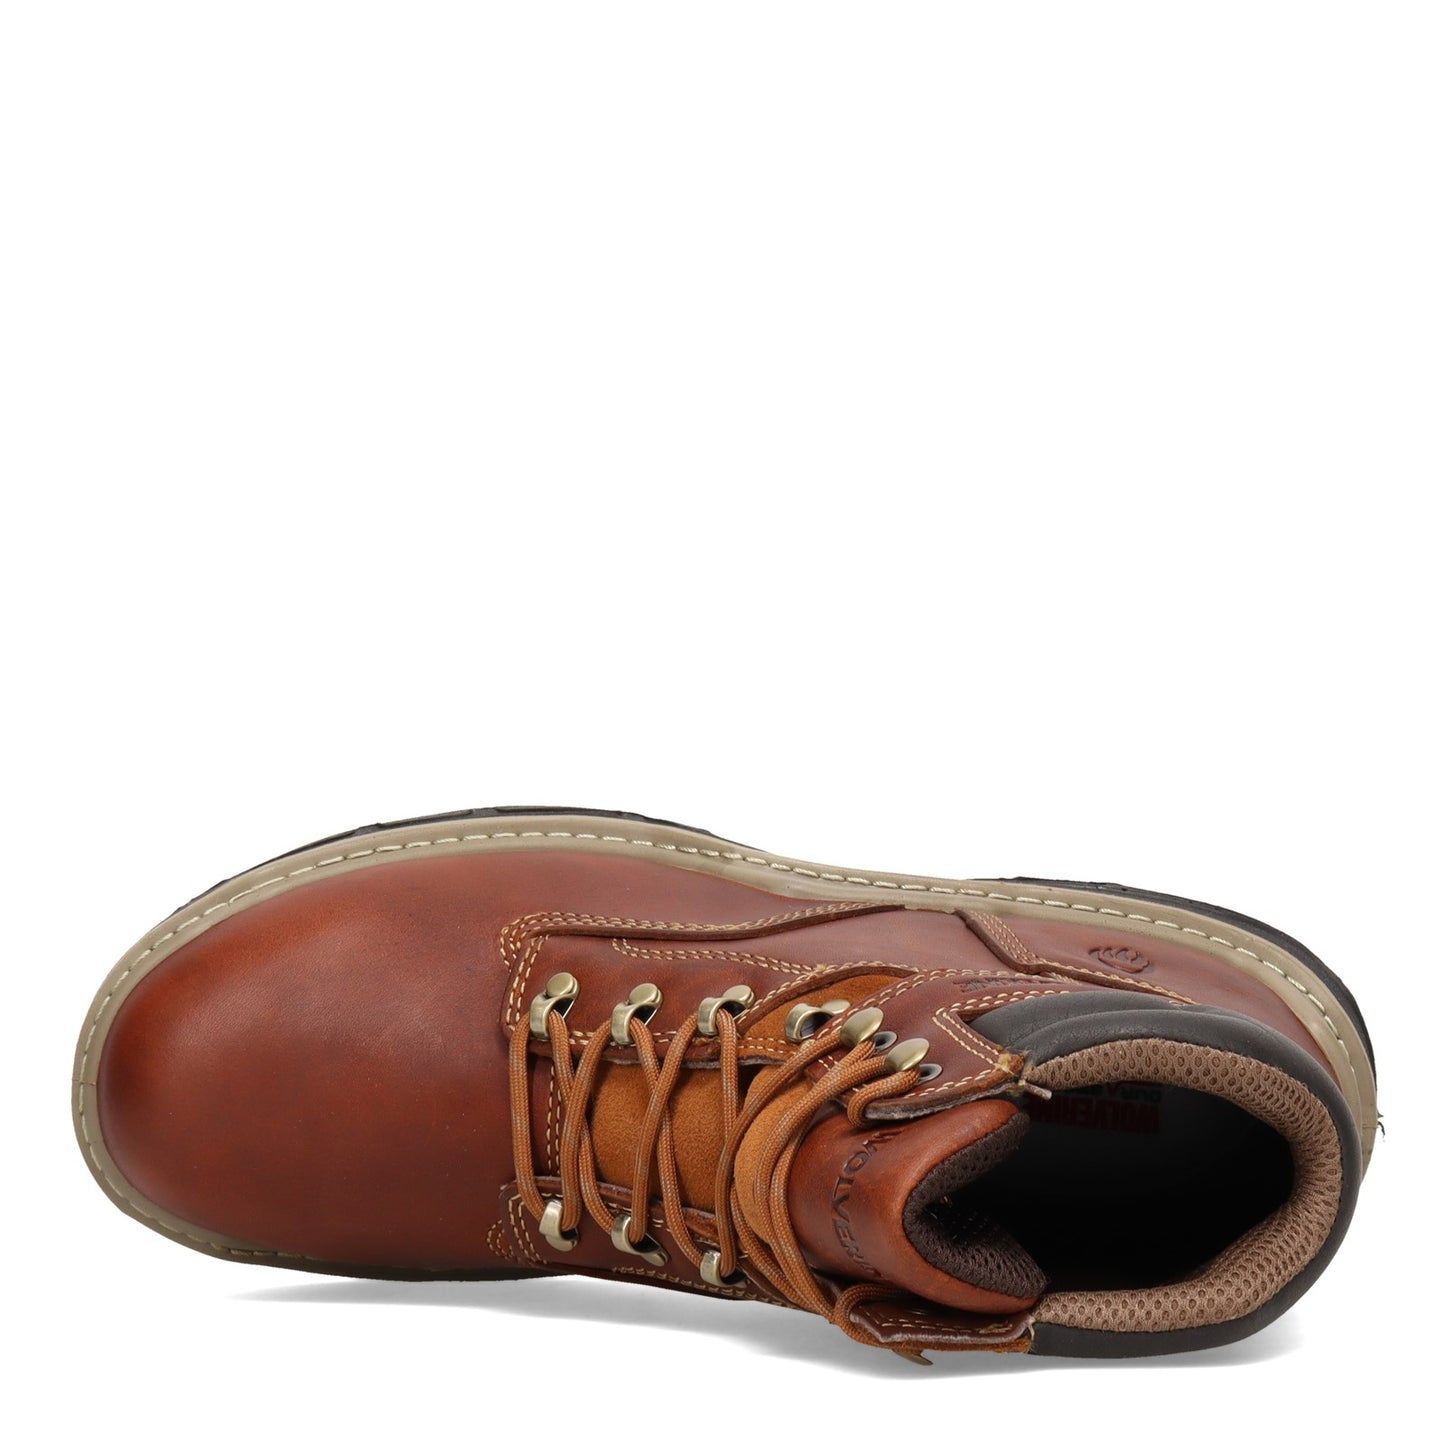 Peltz Shoes  Men's Wolverine Boots Raider Durashocks 6in Work Boot PEANUT W210057